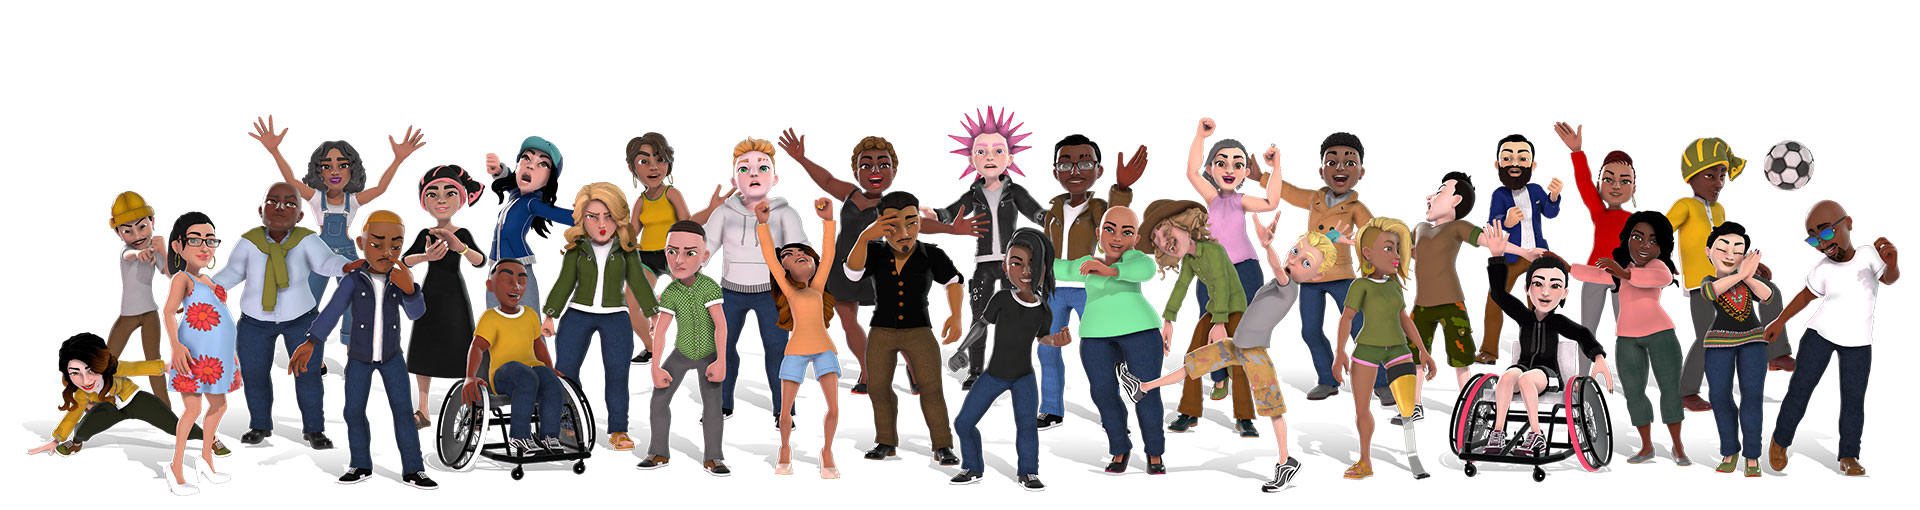 Xbox-Avatare, die eine Vielzahl von Menschen in verschiedenen Outfits zeigen